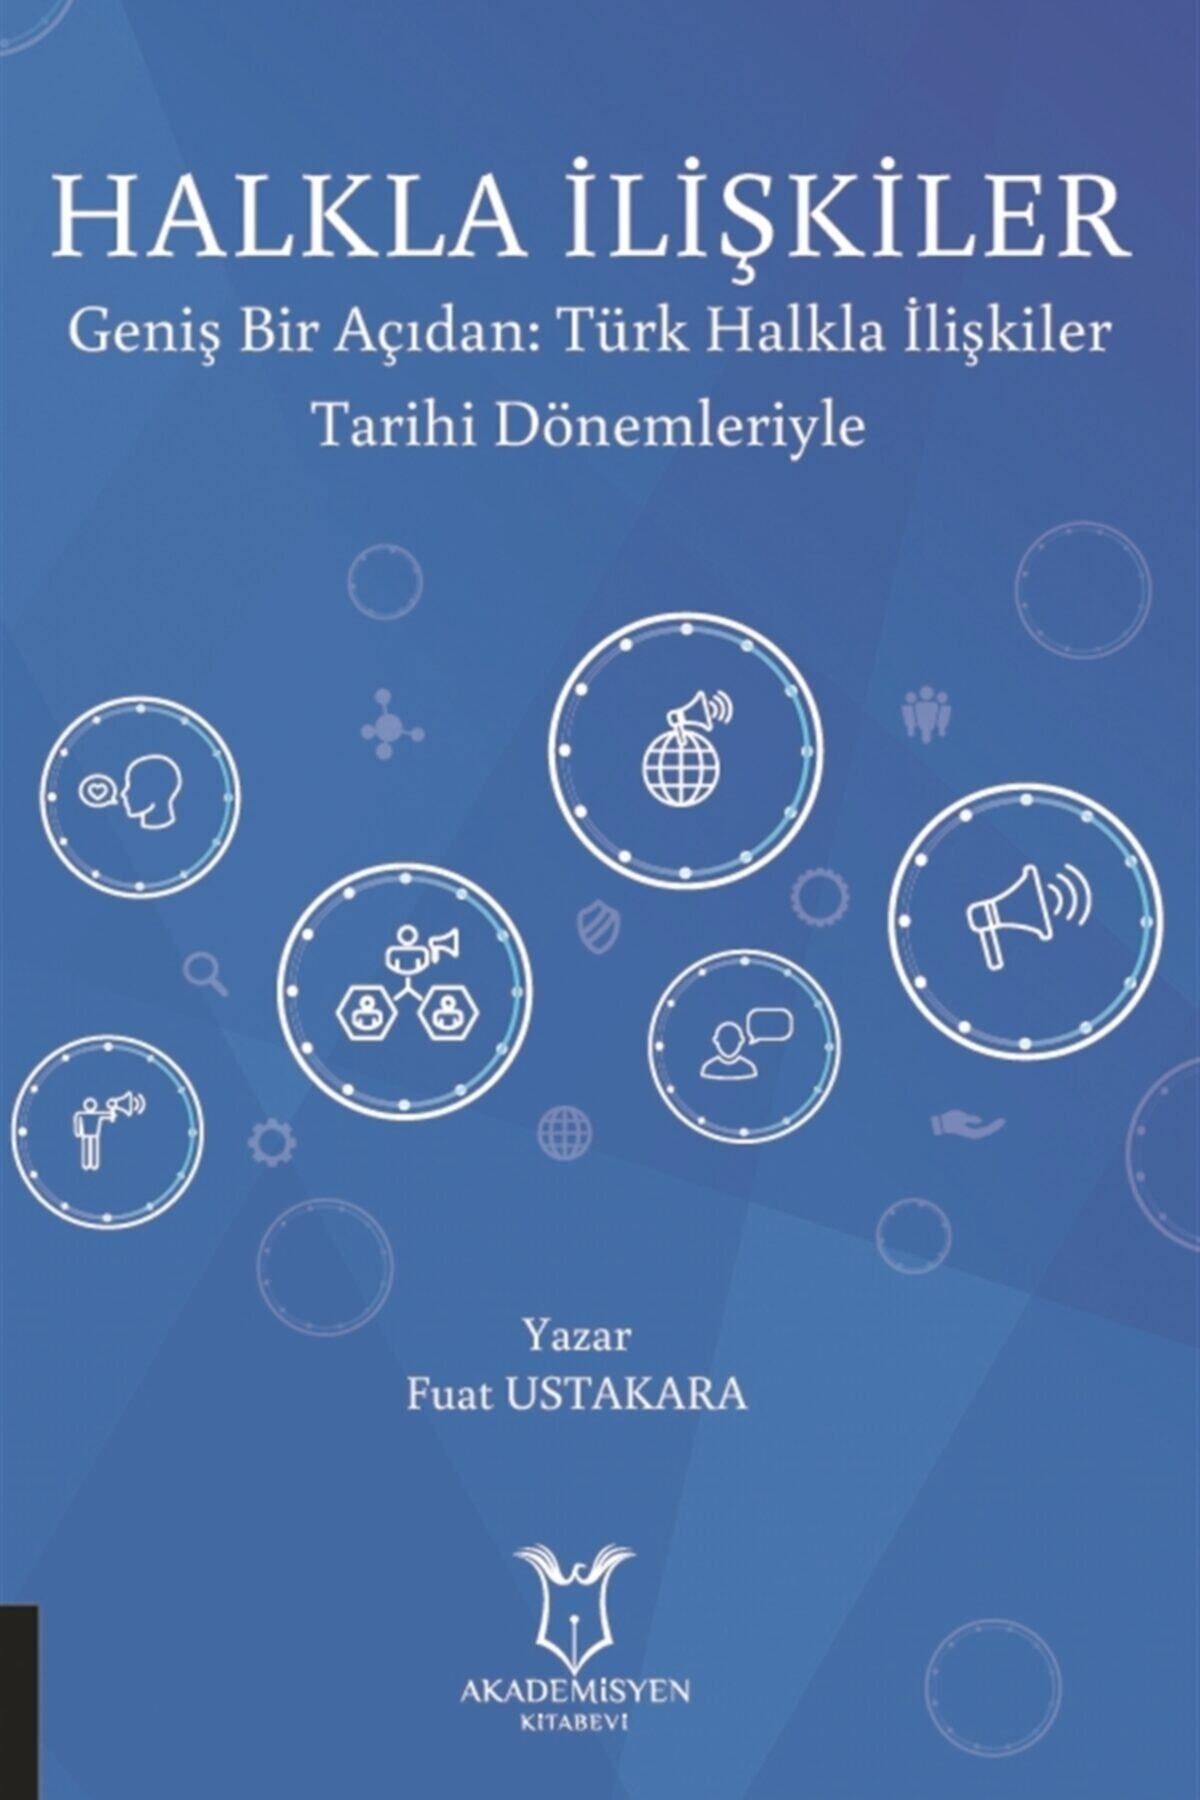 Akademisyen Kitabevi Halkla Ilişkiler - Fuat Ustakara 9786257275880